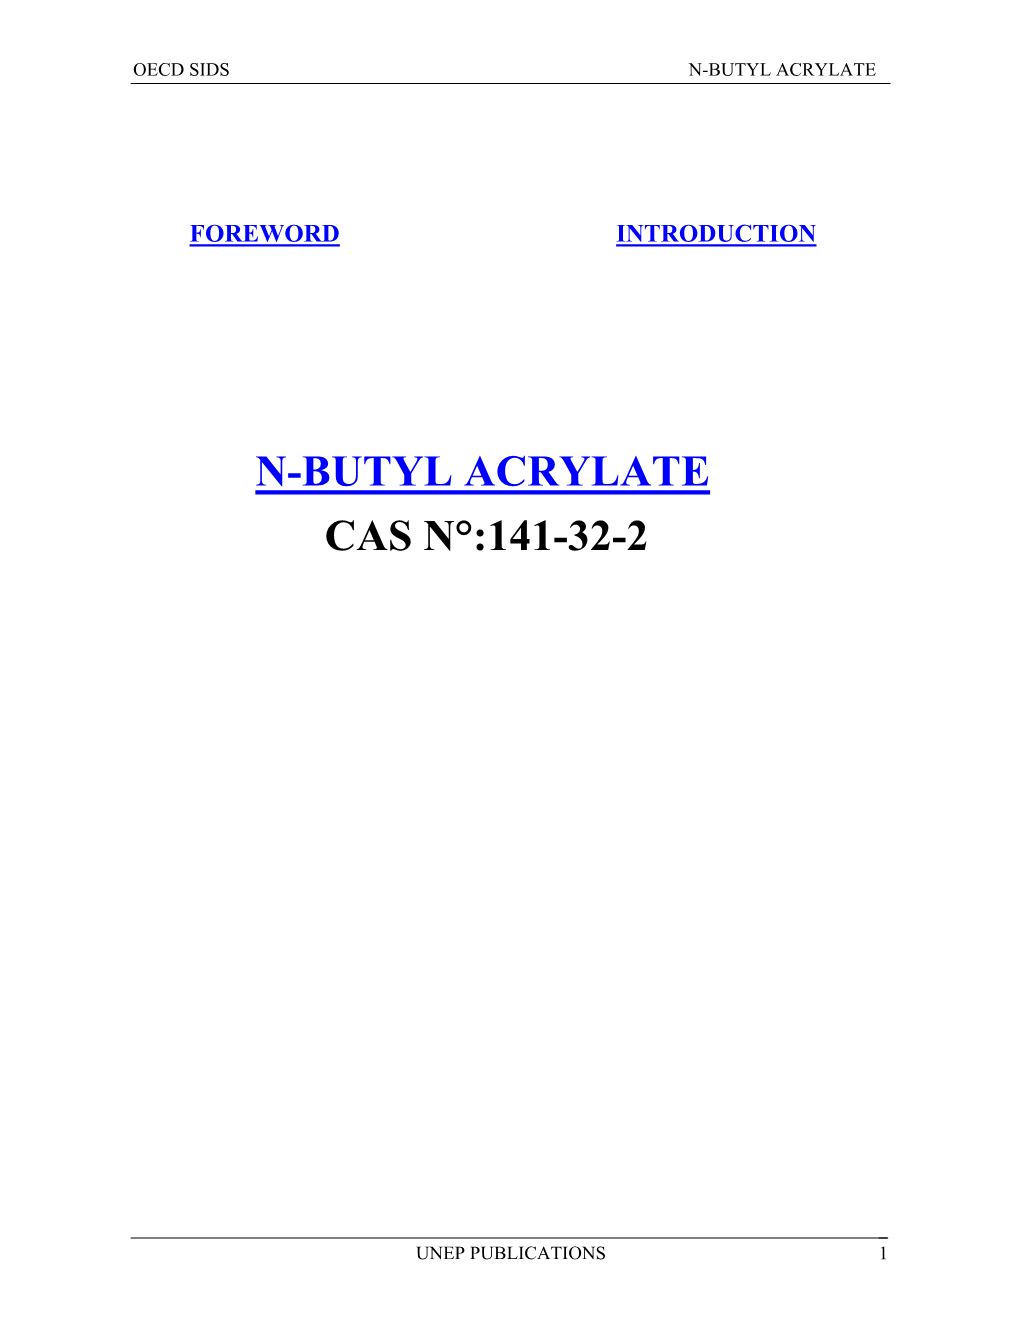 N-Butyl Acrylate Cas N°:141-32-2